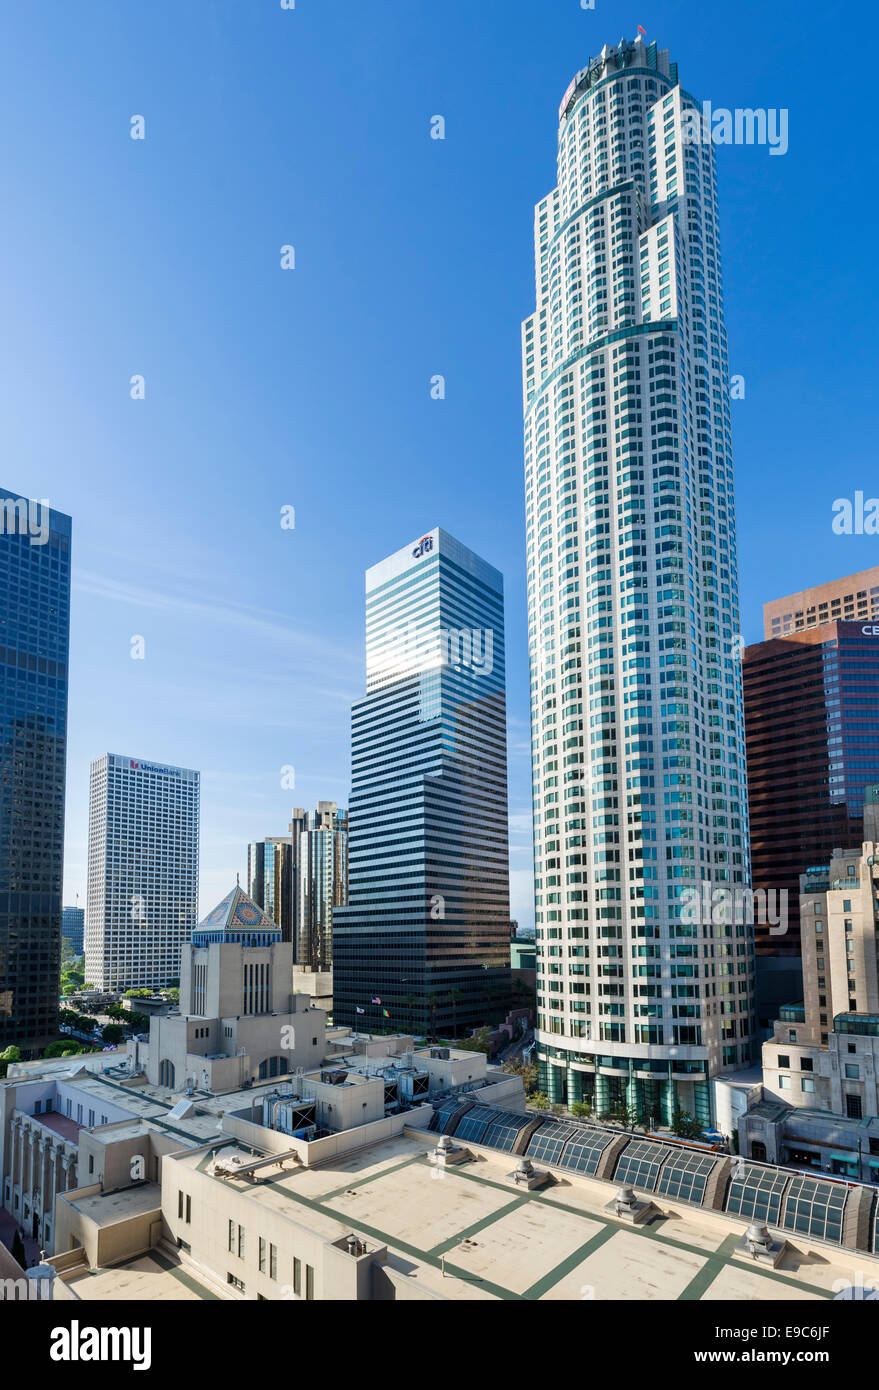 Die Skyline der Innenstadt mit uns Bank Tower in die Rechte und zentrale Bibliothek im Vordergrund, Los Angeles, Kalifornien, USA Stockfoto